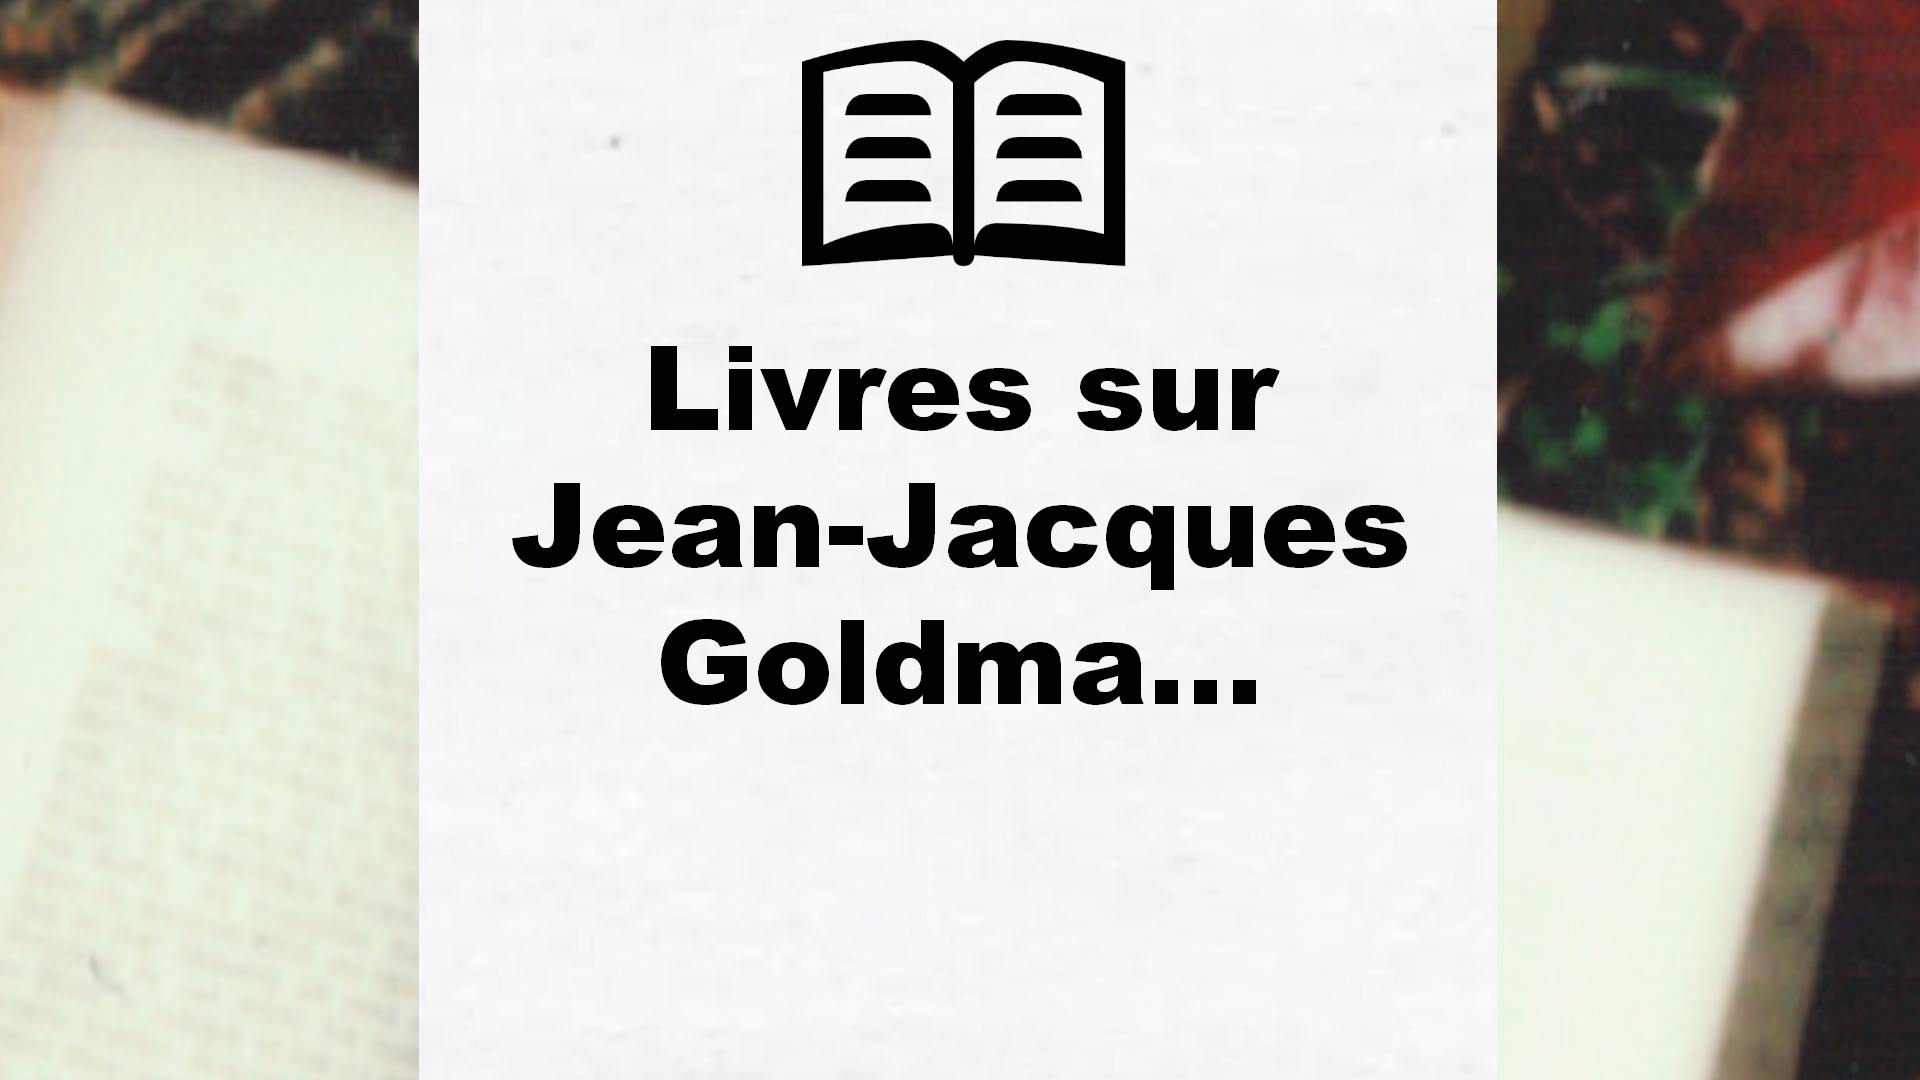 Livres sur Jean-Jacques Goldman